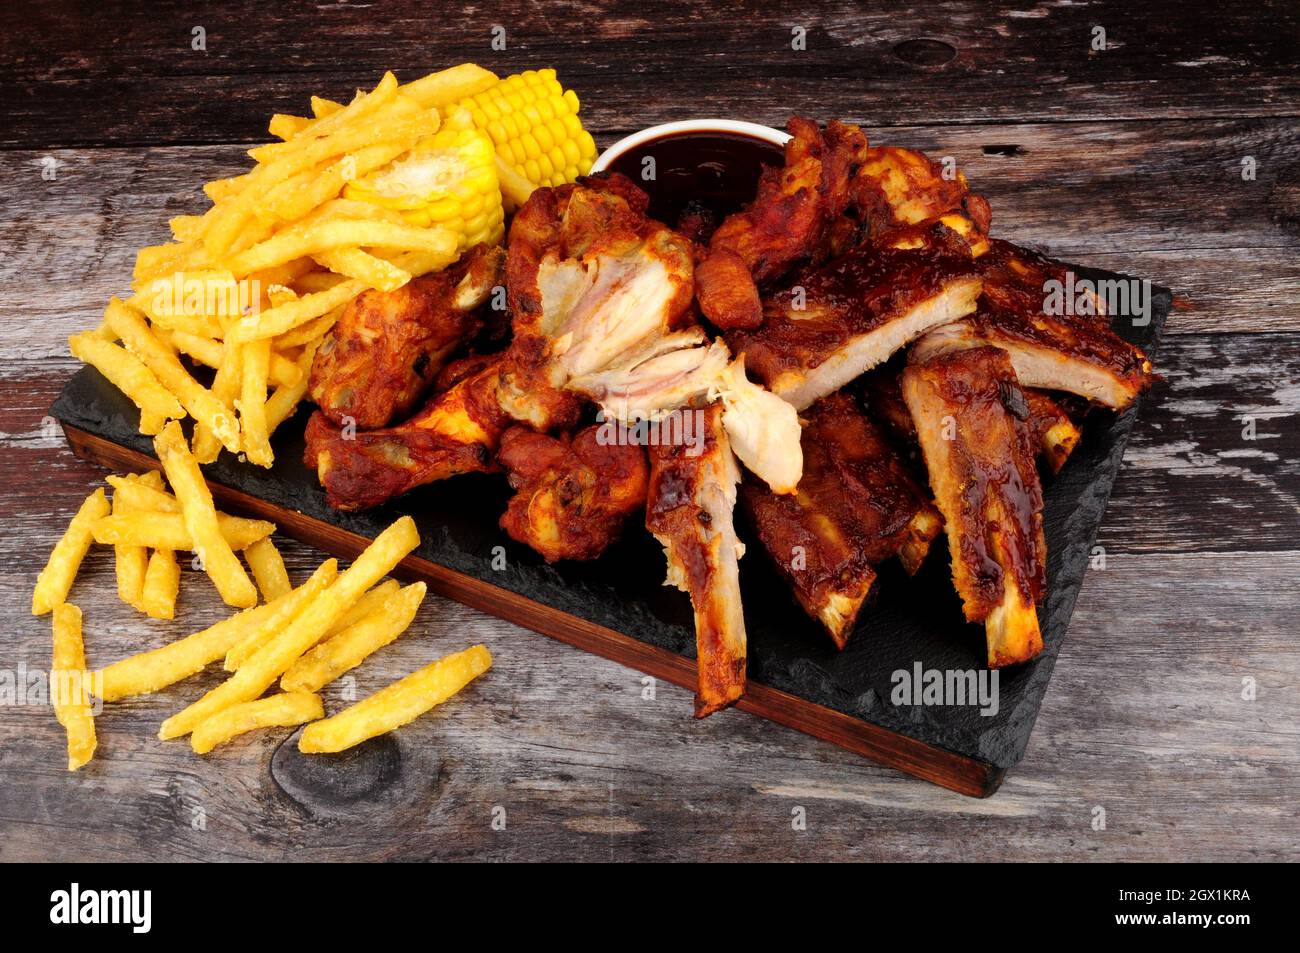 Grillen Sie Schweineribs und Hähnchenflügel mit Pommes frites und Mais auf  dem Maiskolben Stockfotografie - Alamy